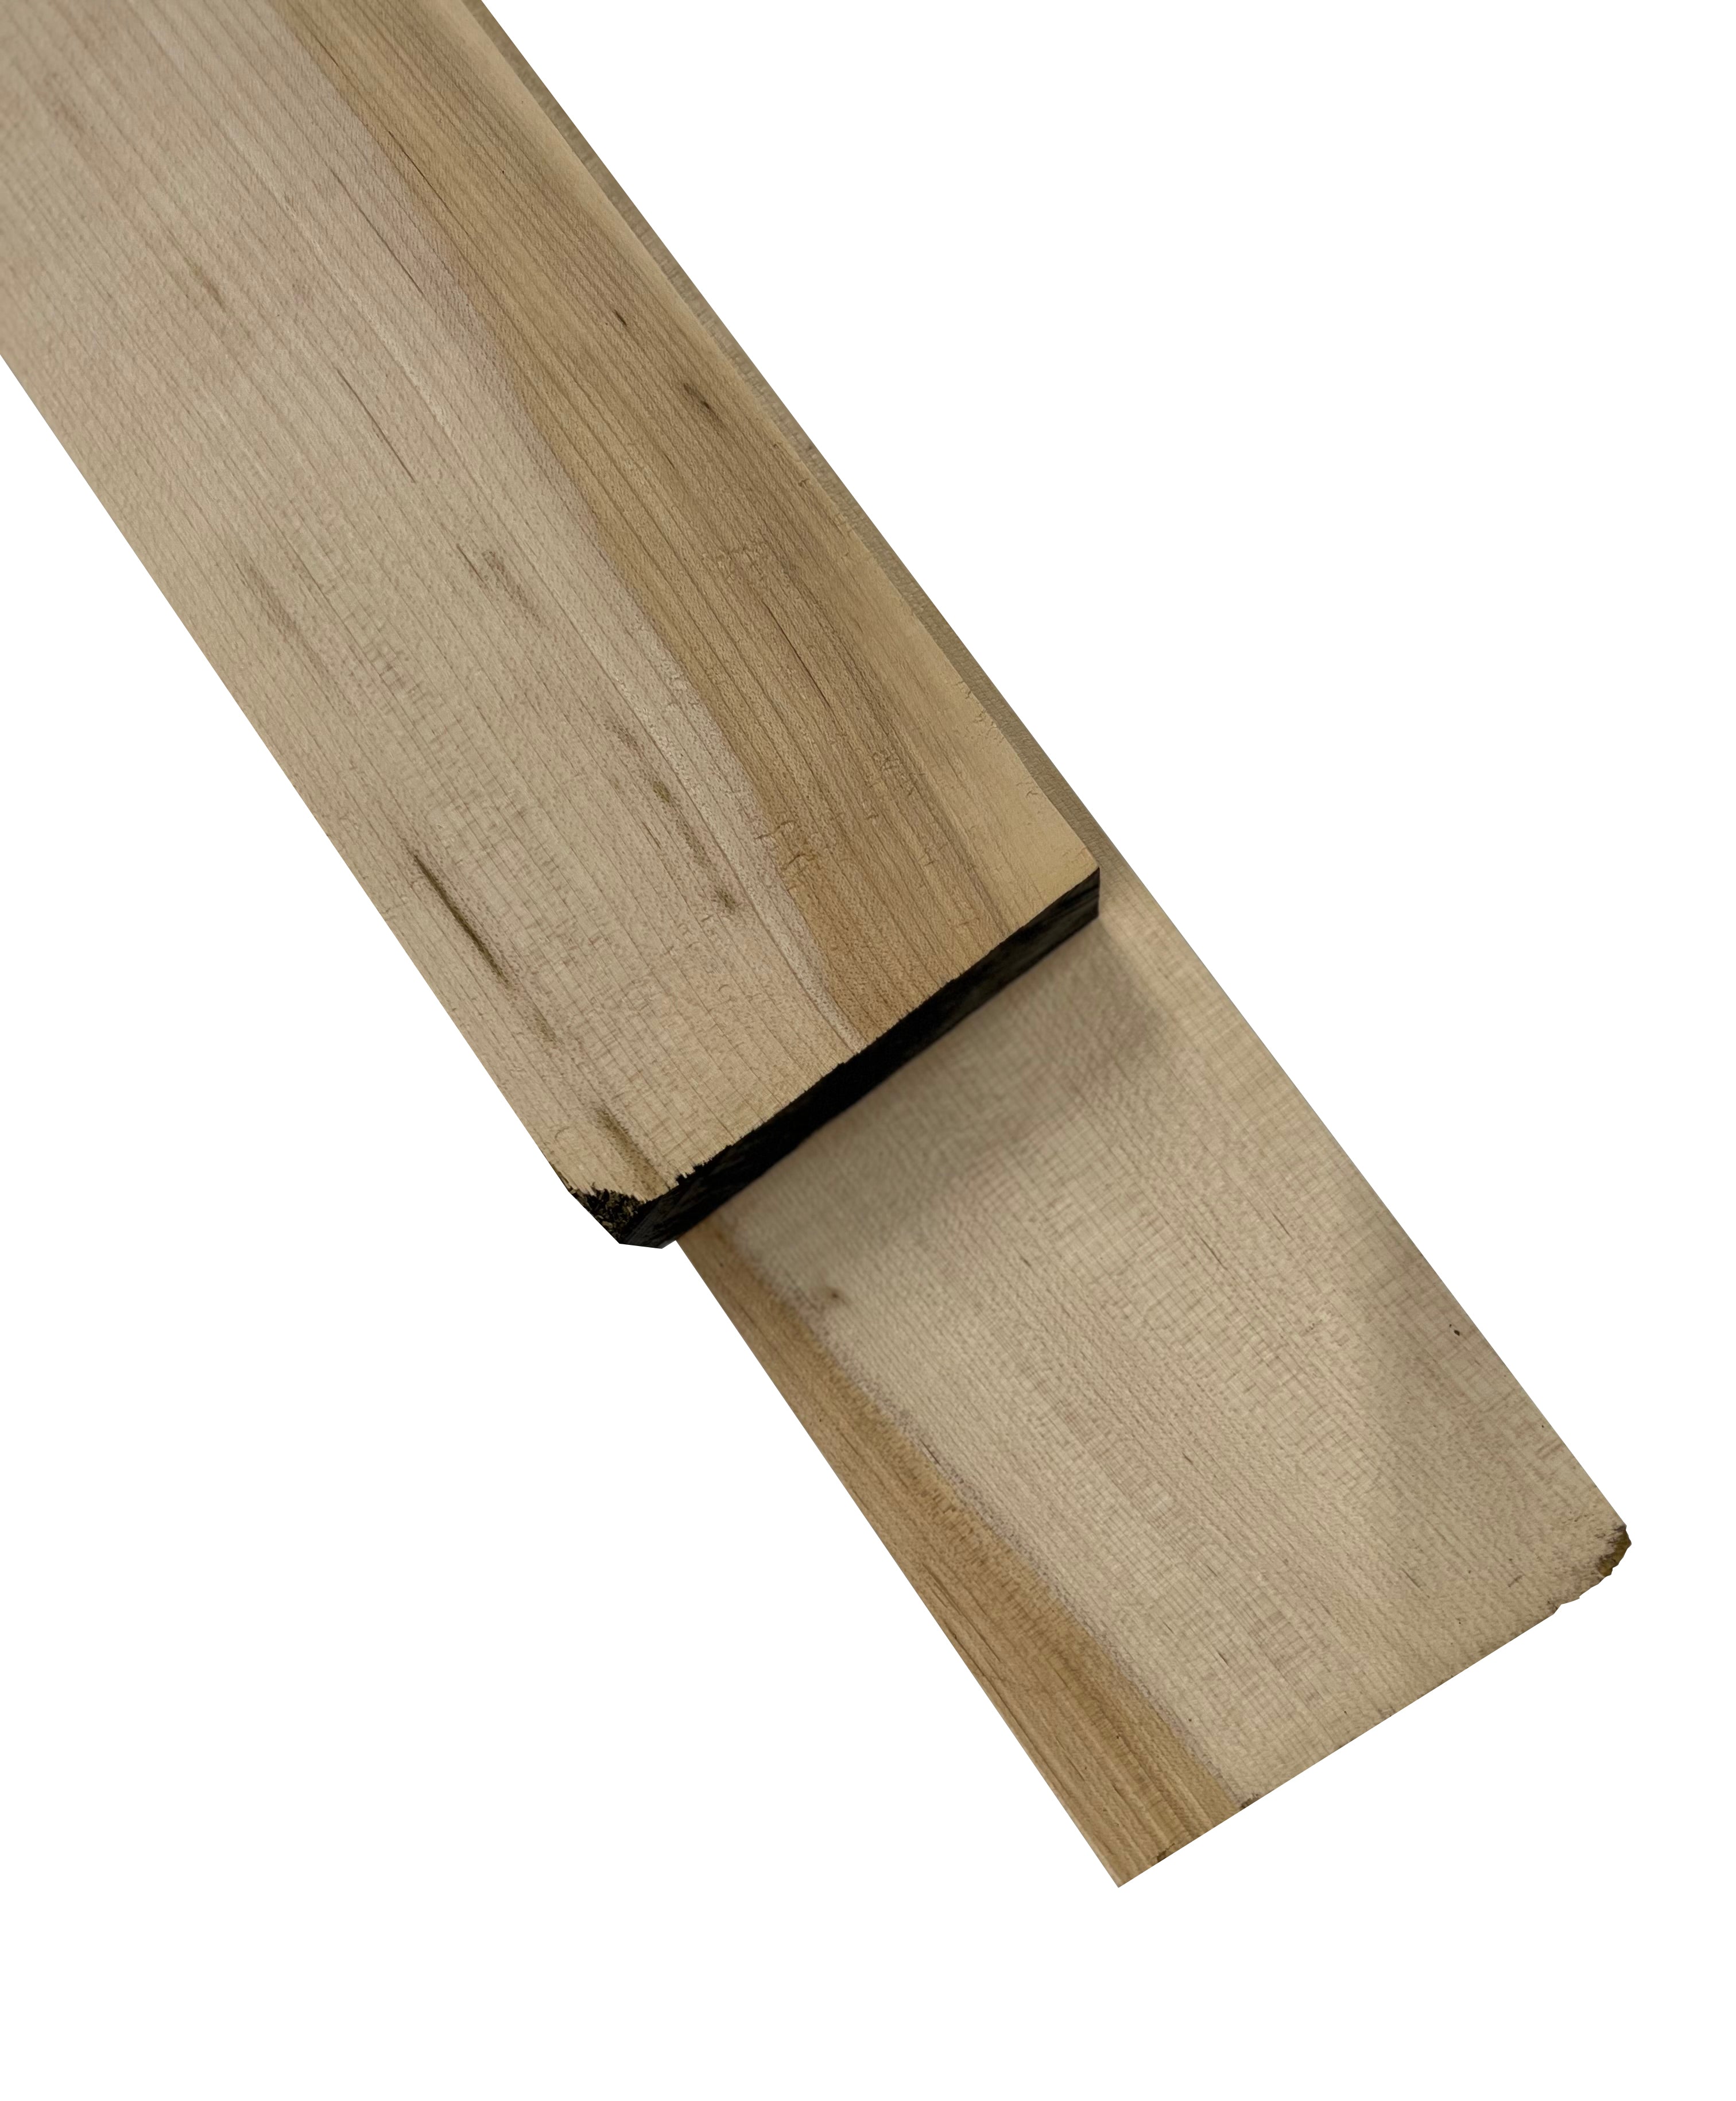 Premium American Hardwood 12/4 Hard Maple Lumber - Exotic Wood Zone - Buy online Across USA 